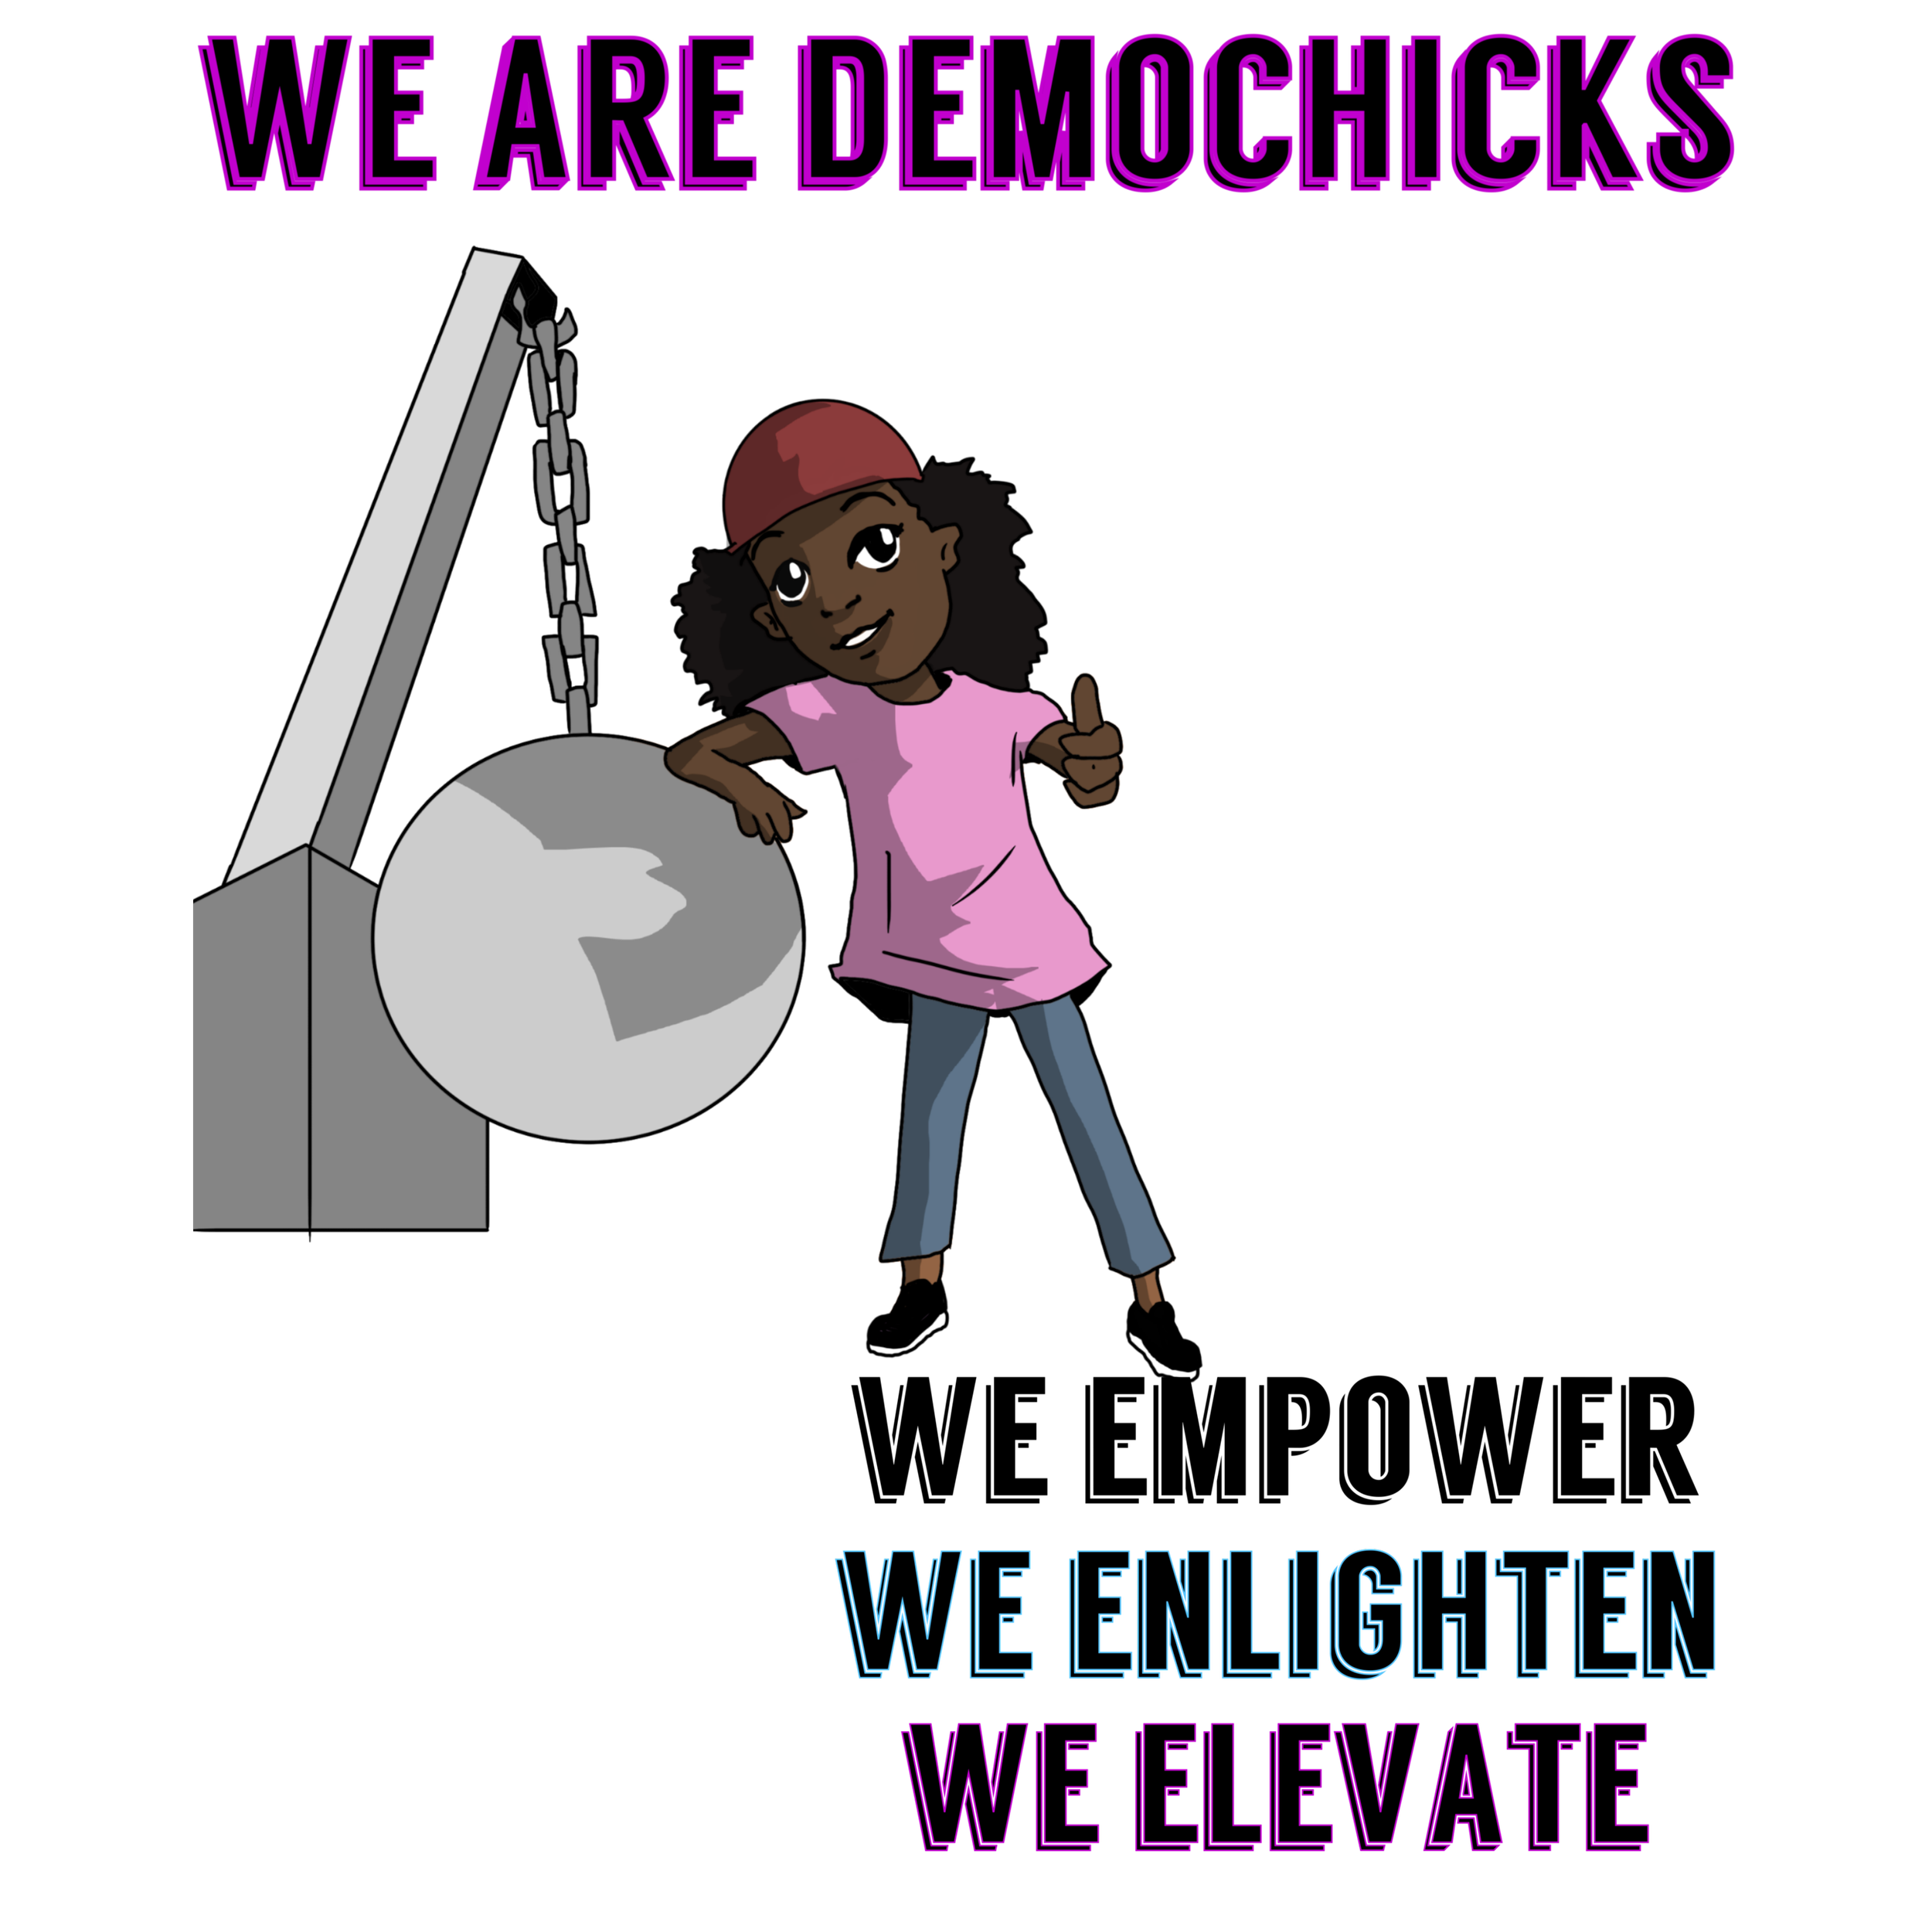 DemoChicks full logo.png